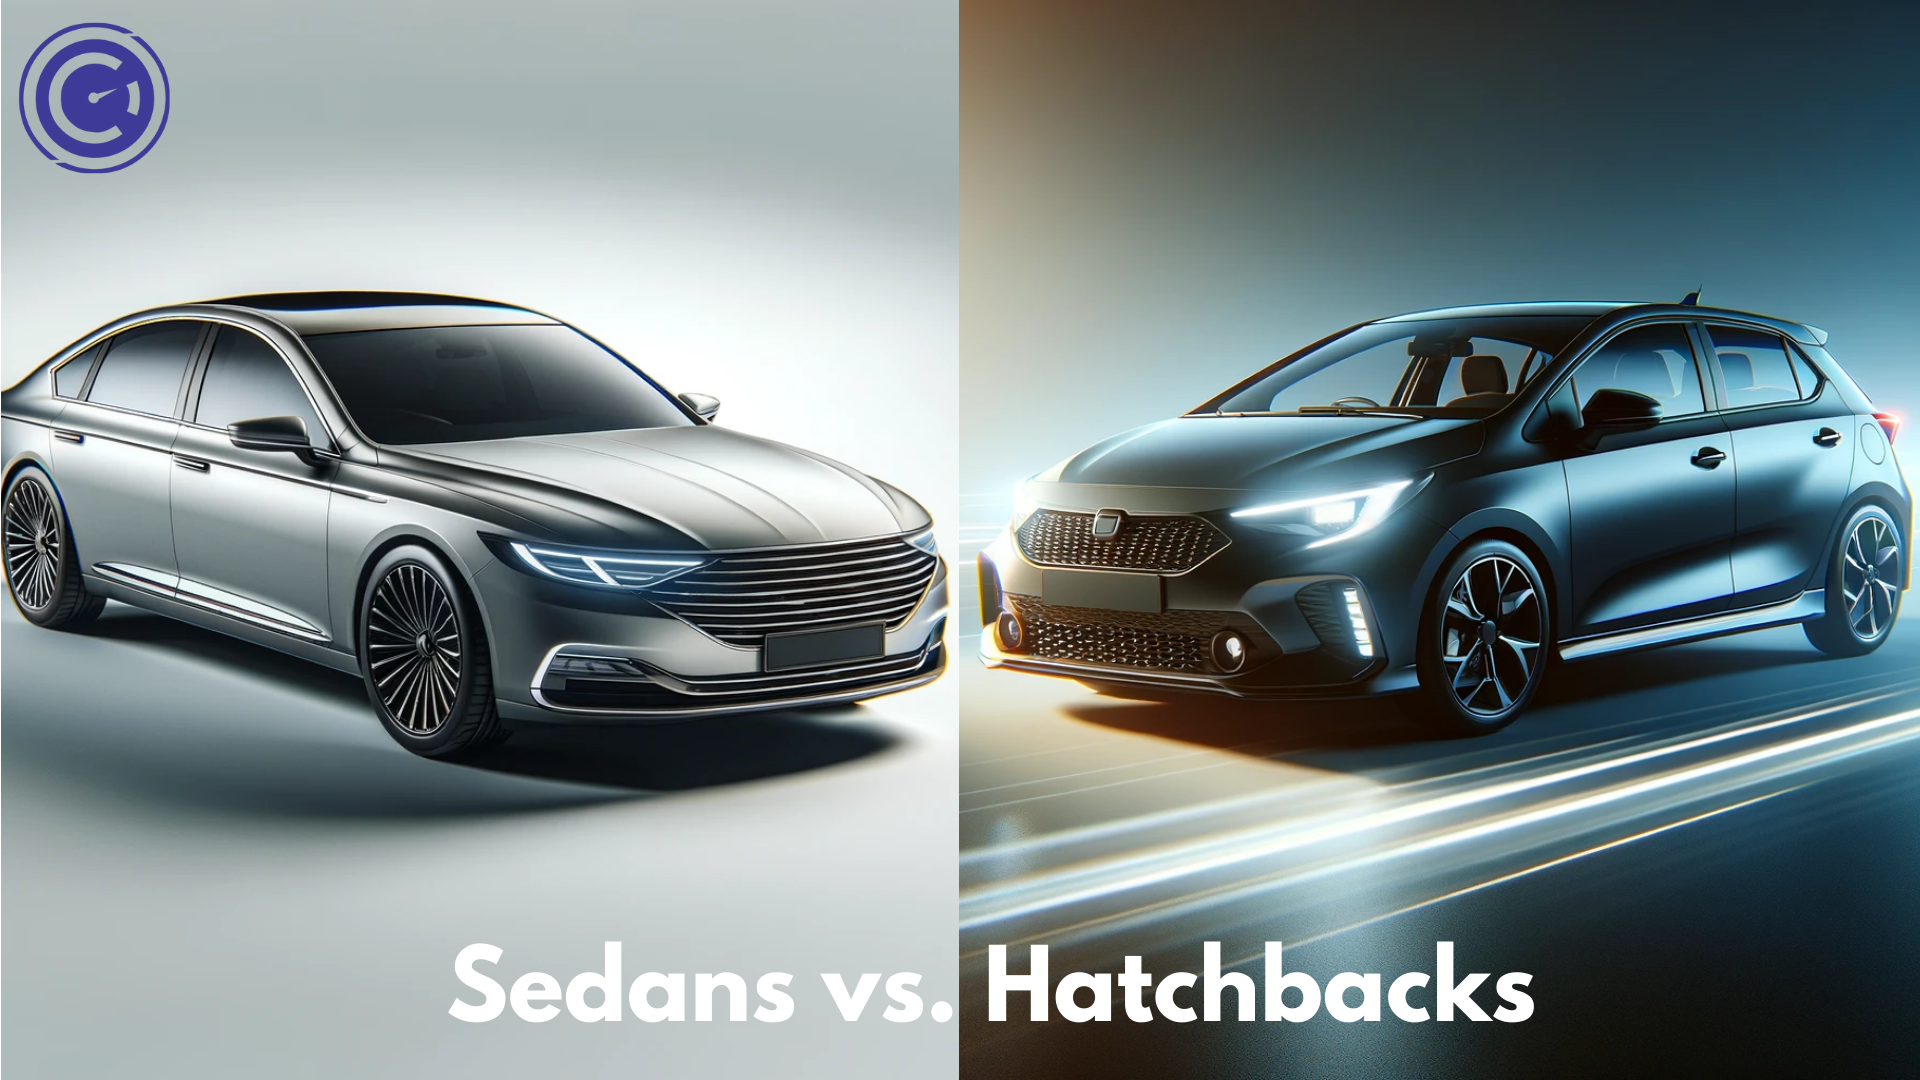 Sedans vs. Hatchbacks